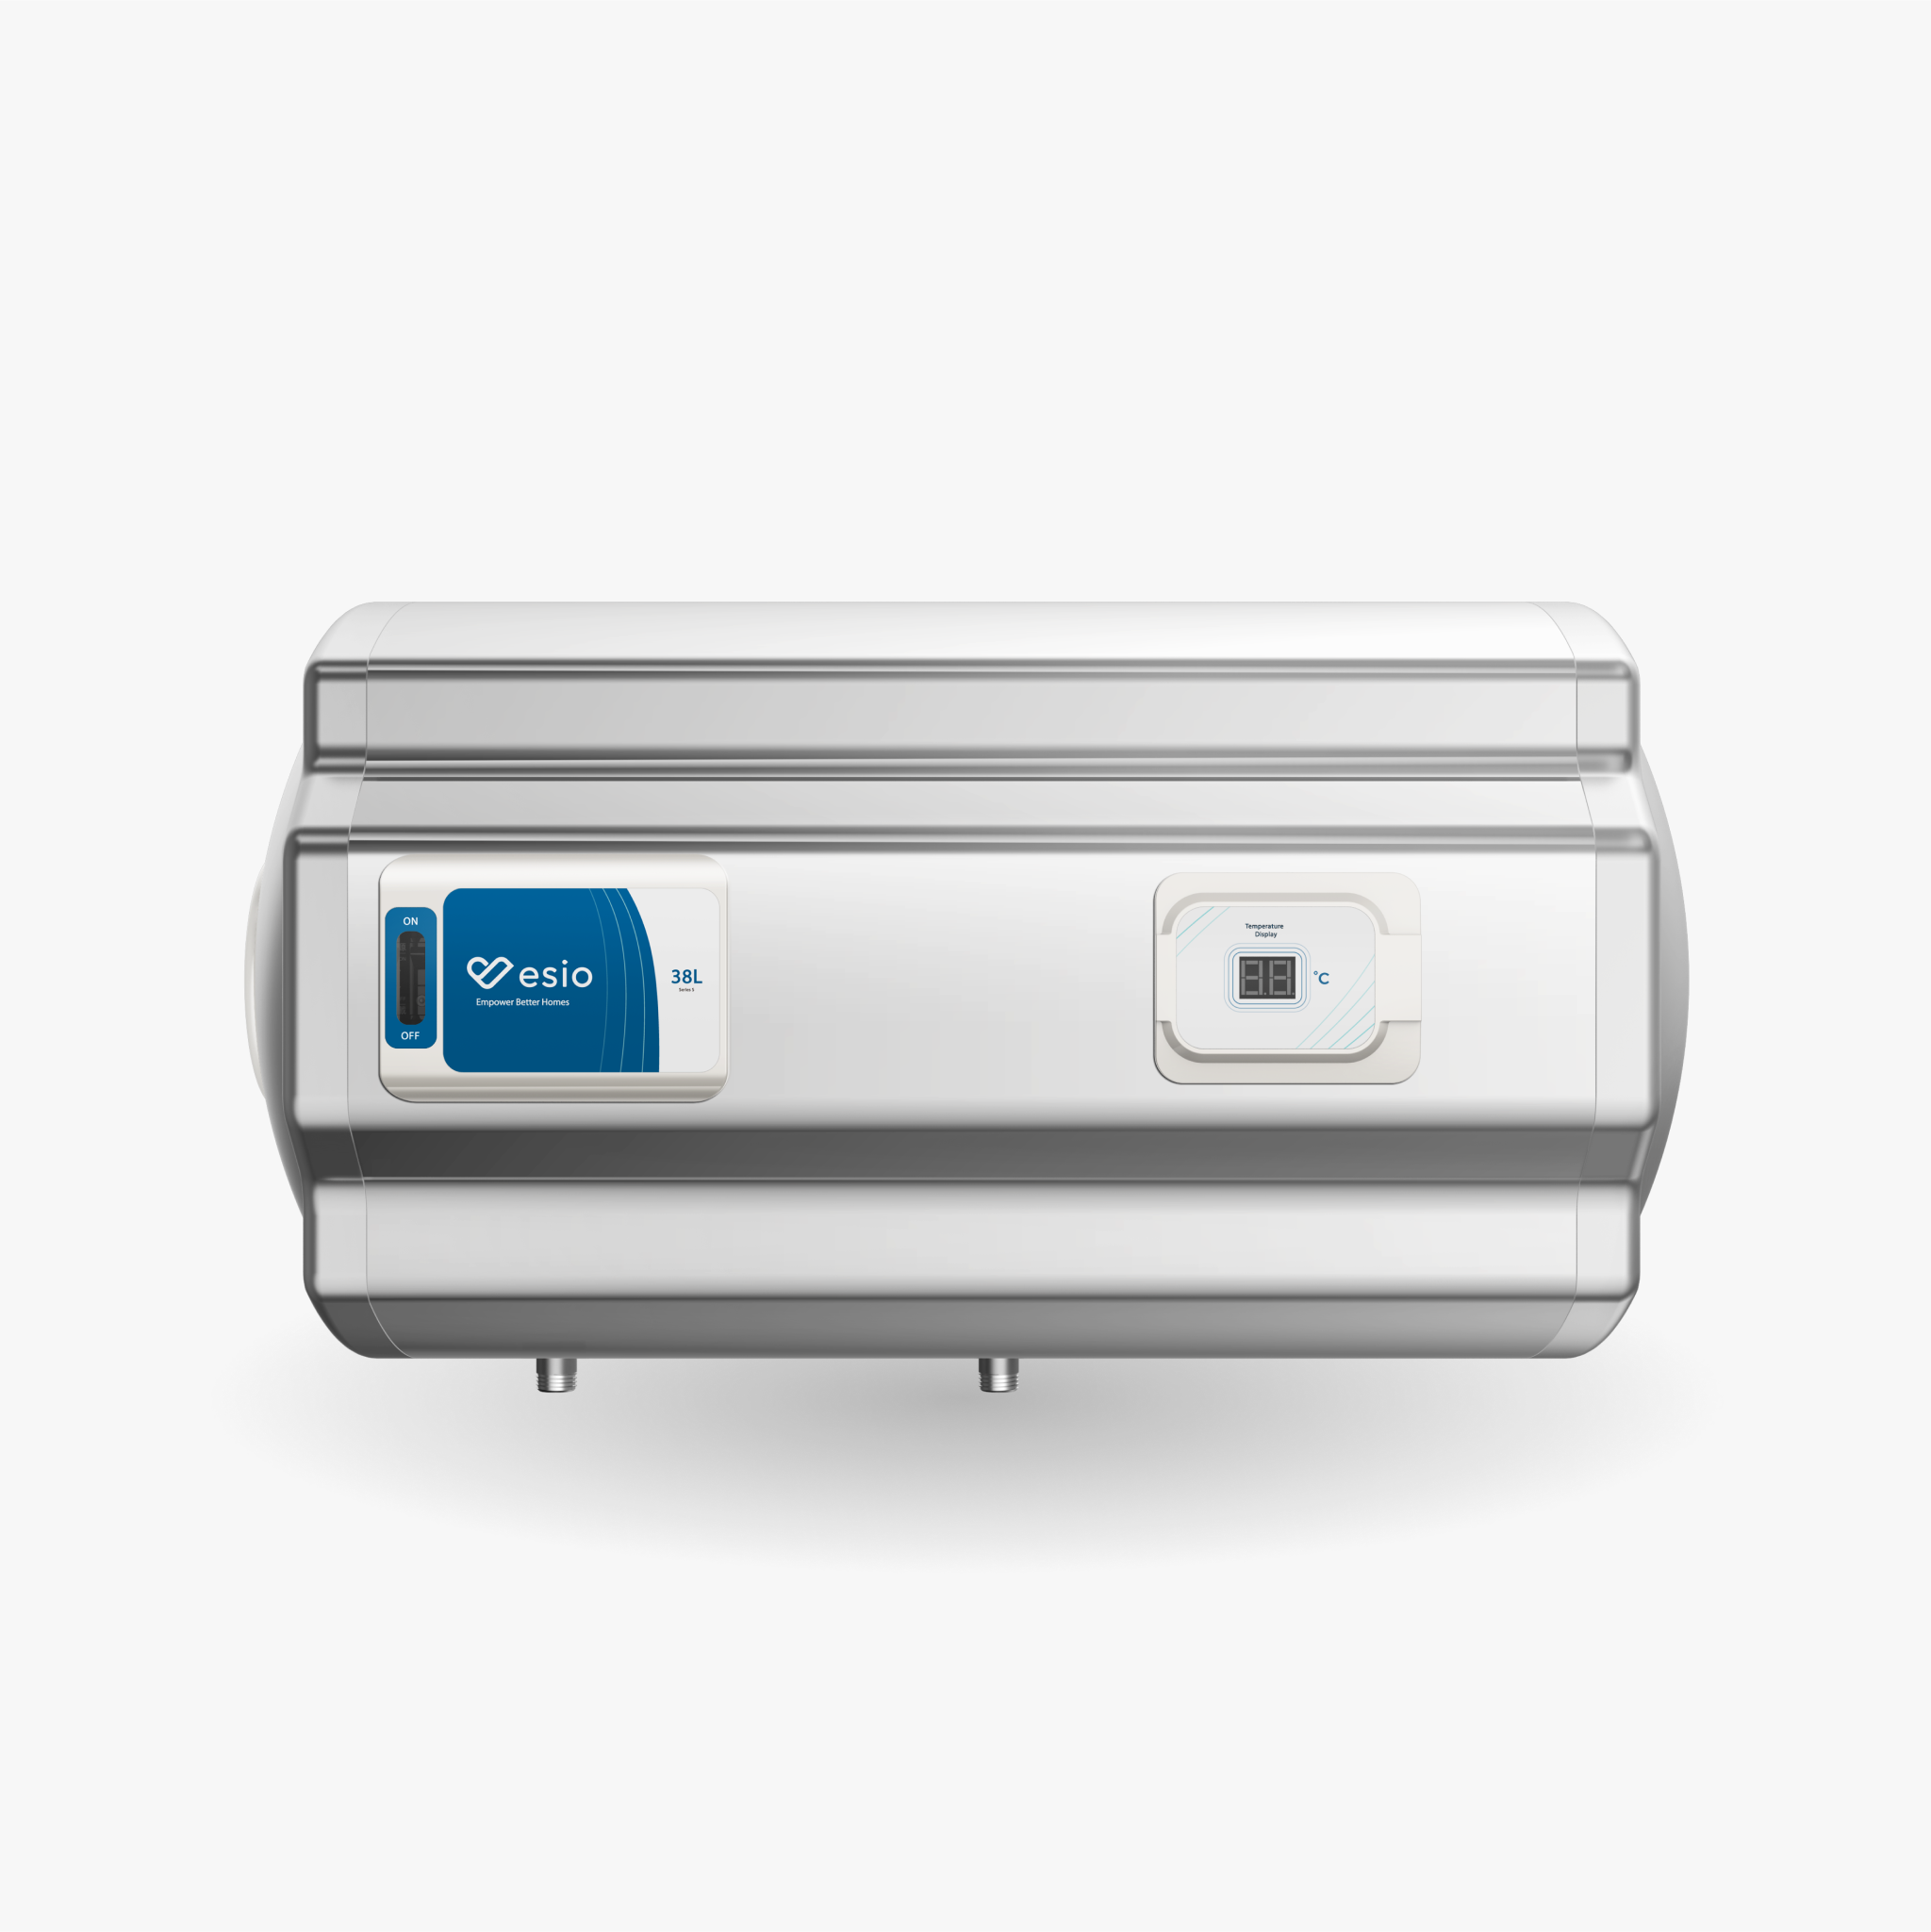 EM-3845H (Esio Storage Water Heater)